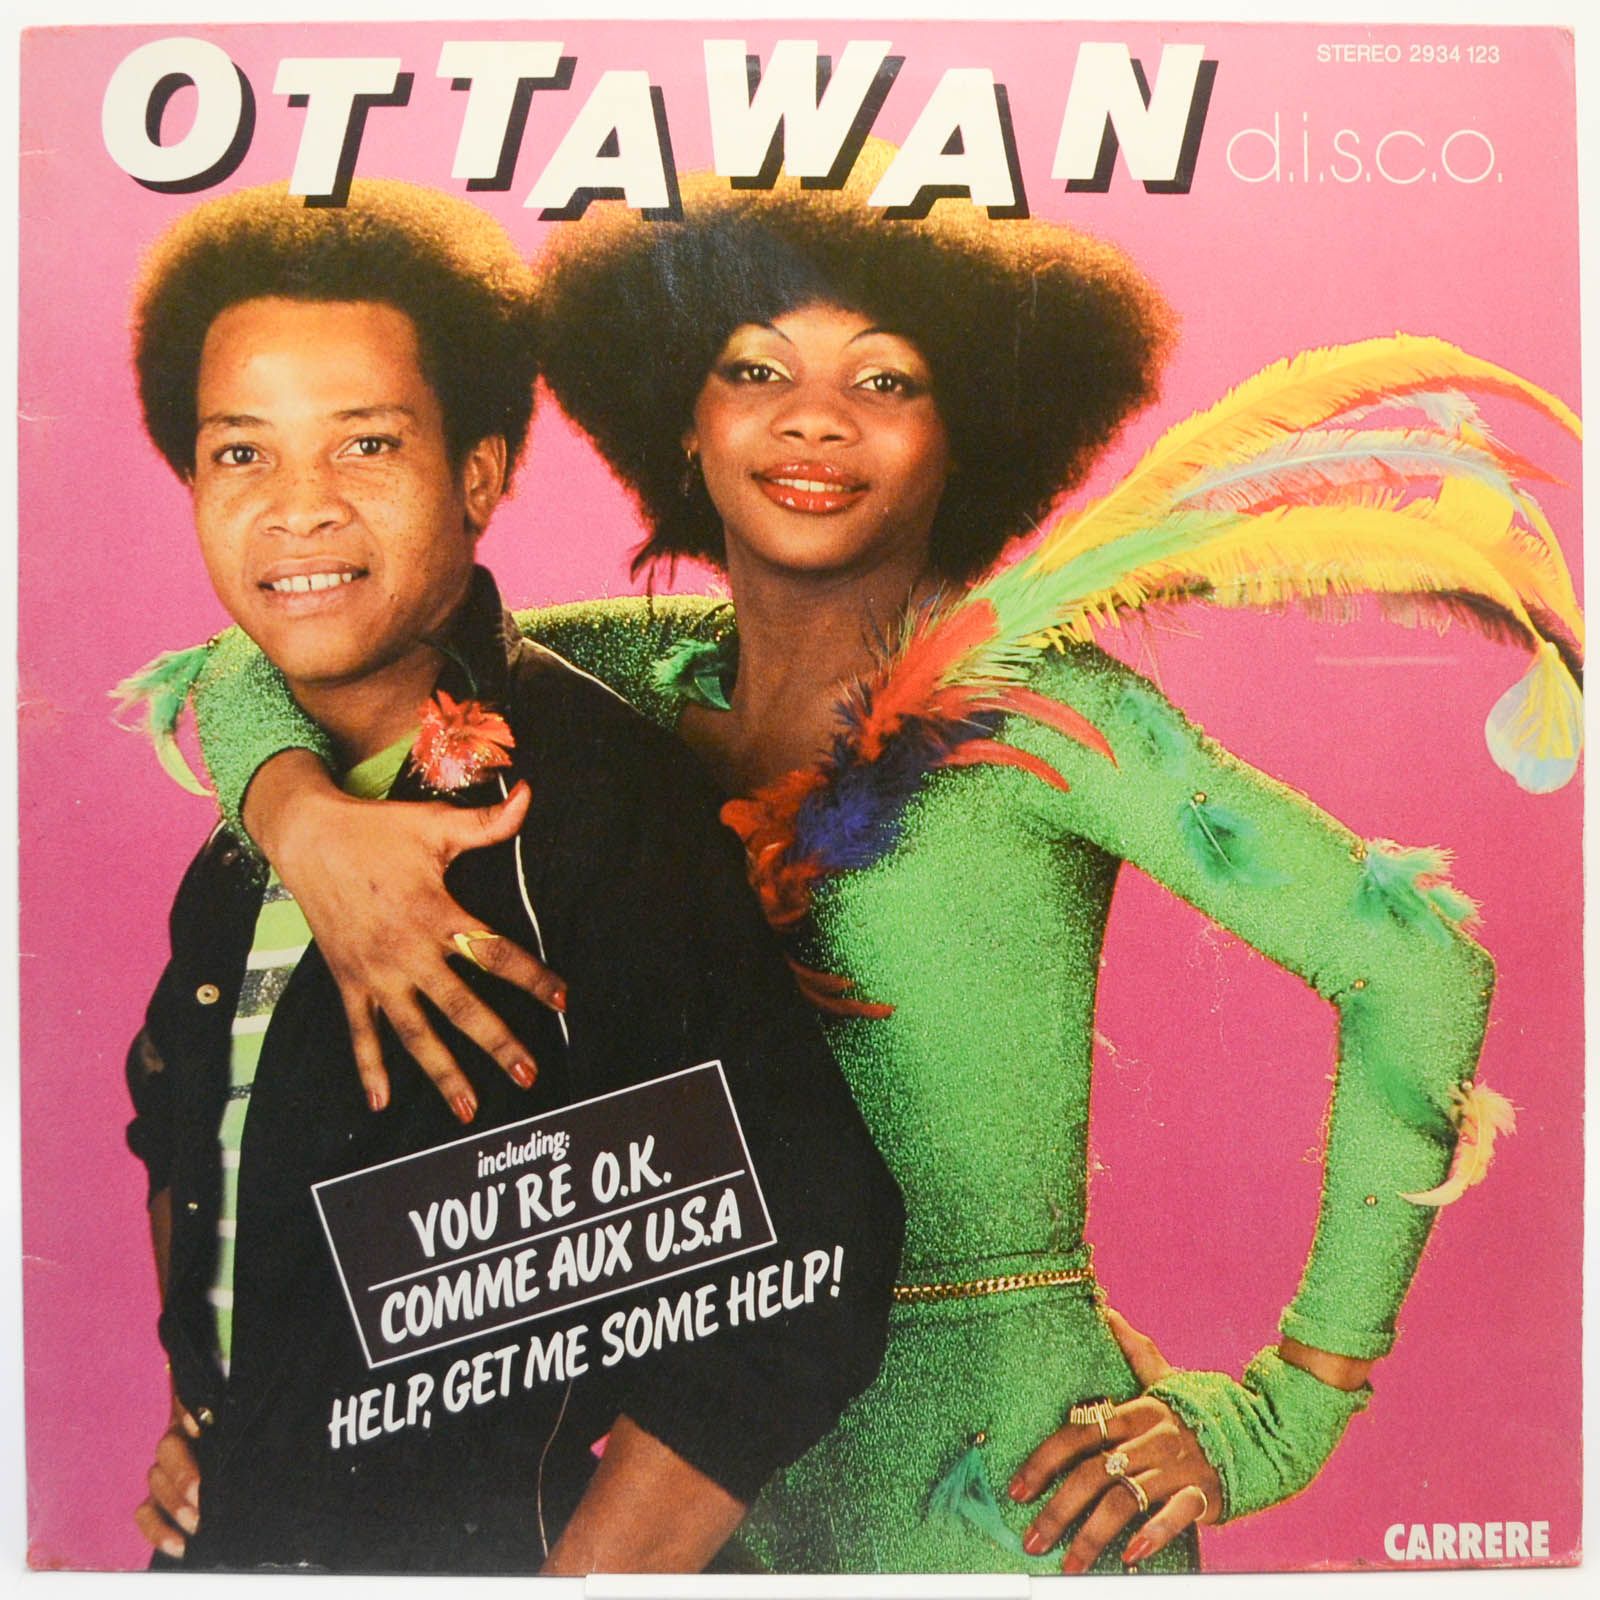 Ottawan — D.I.S.C.O., 1980